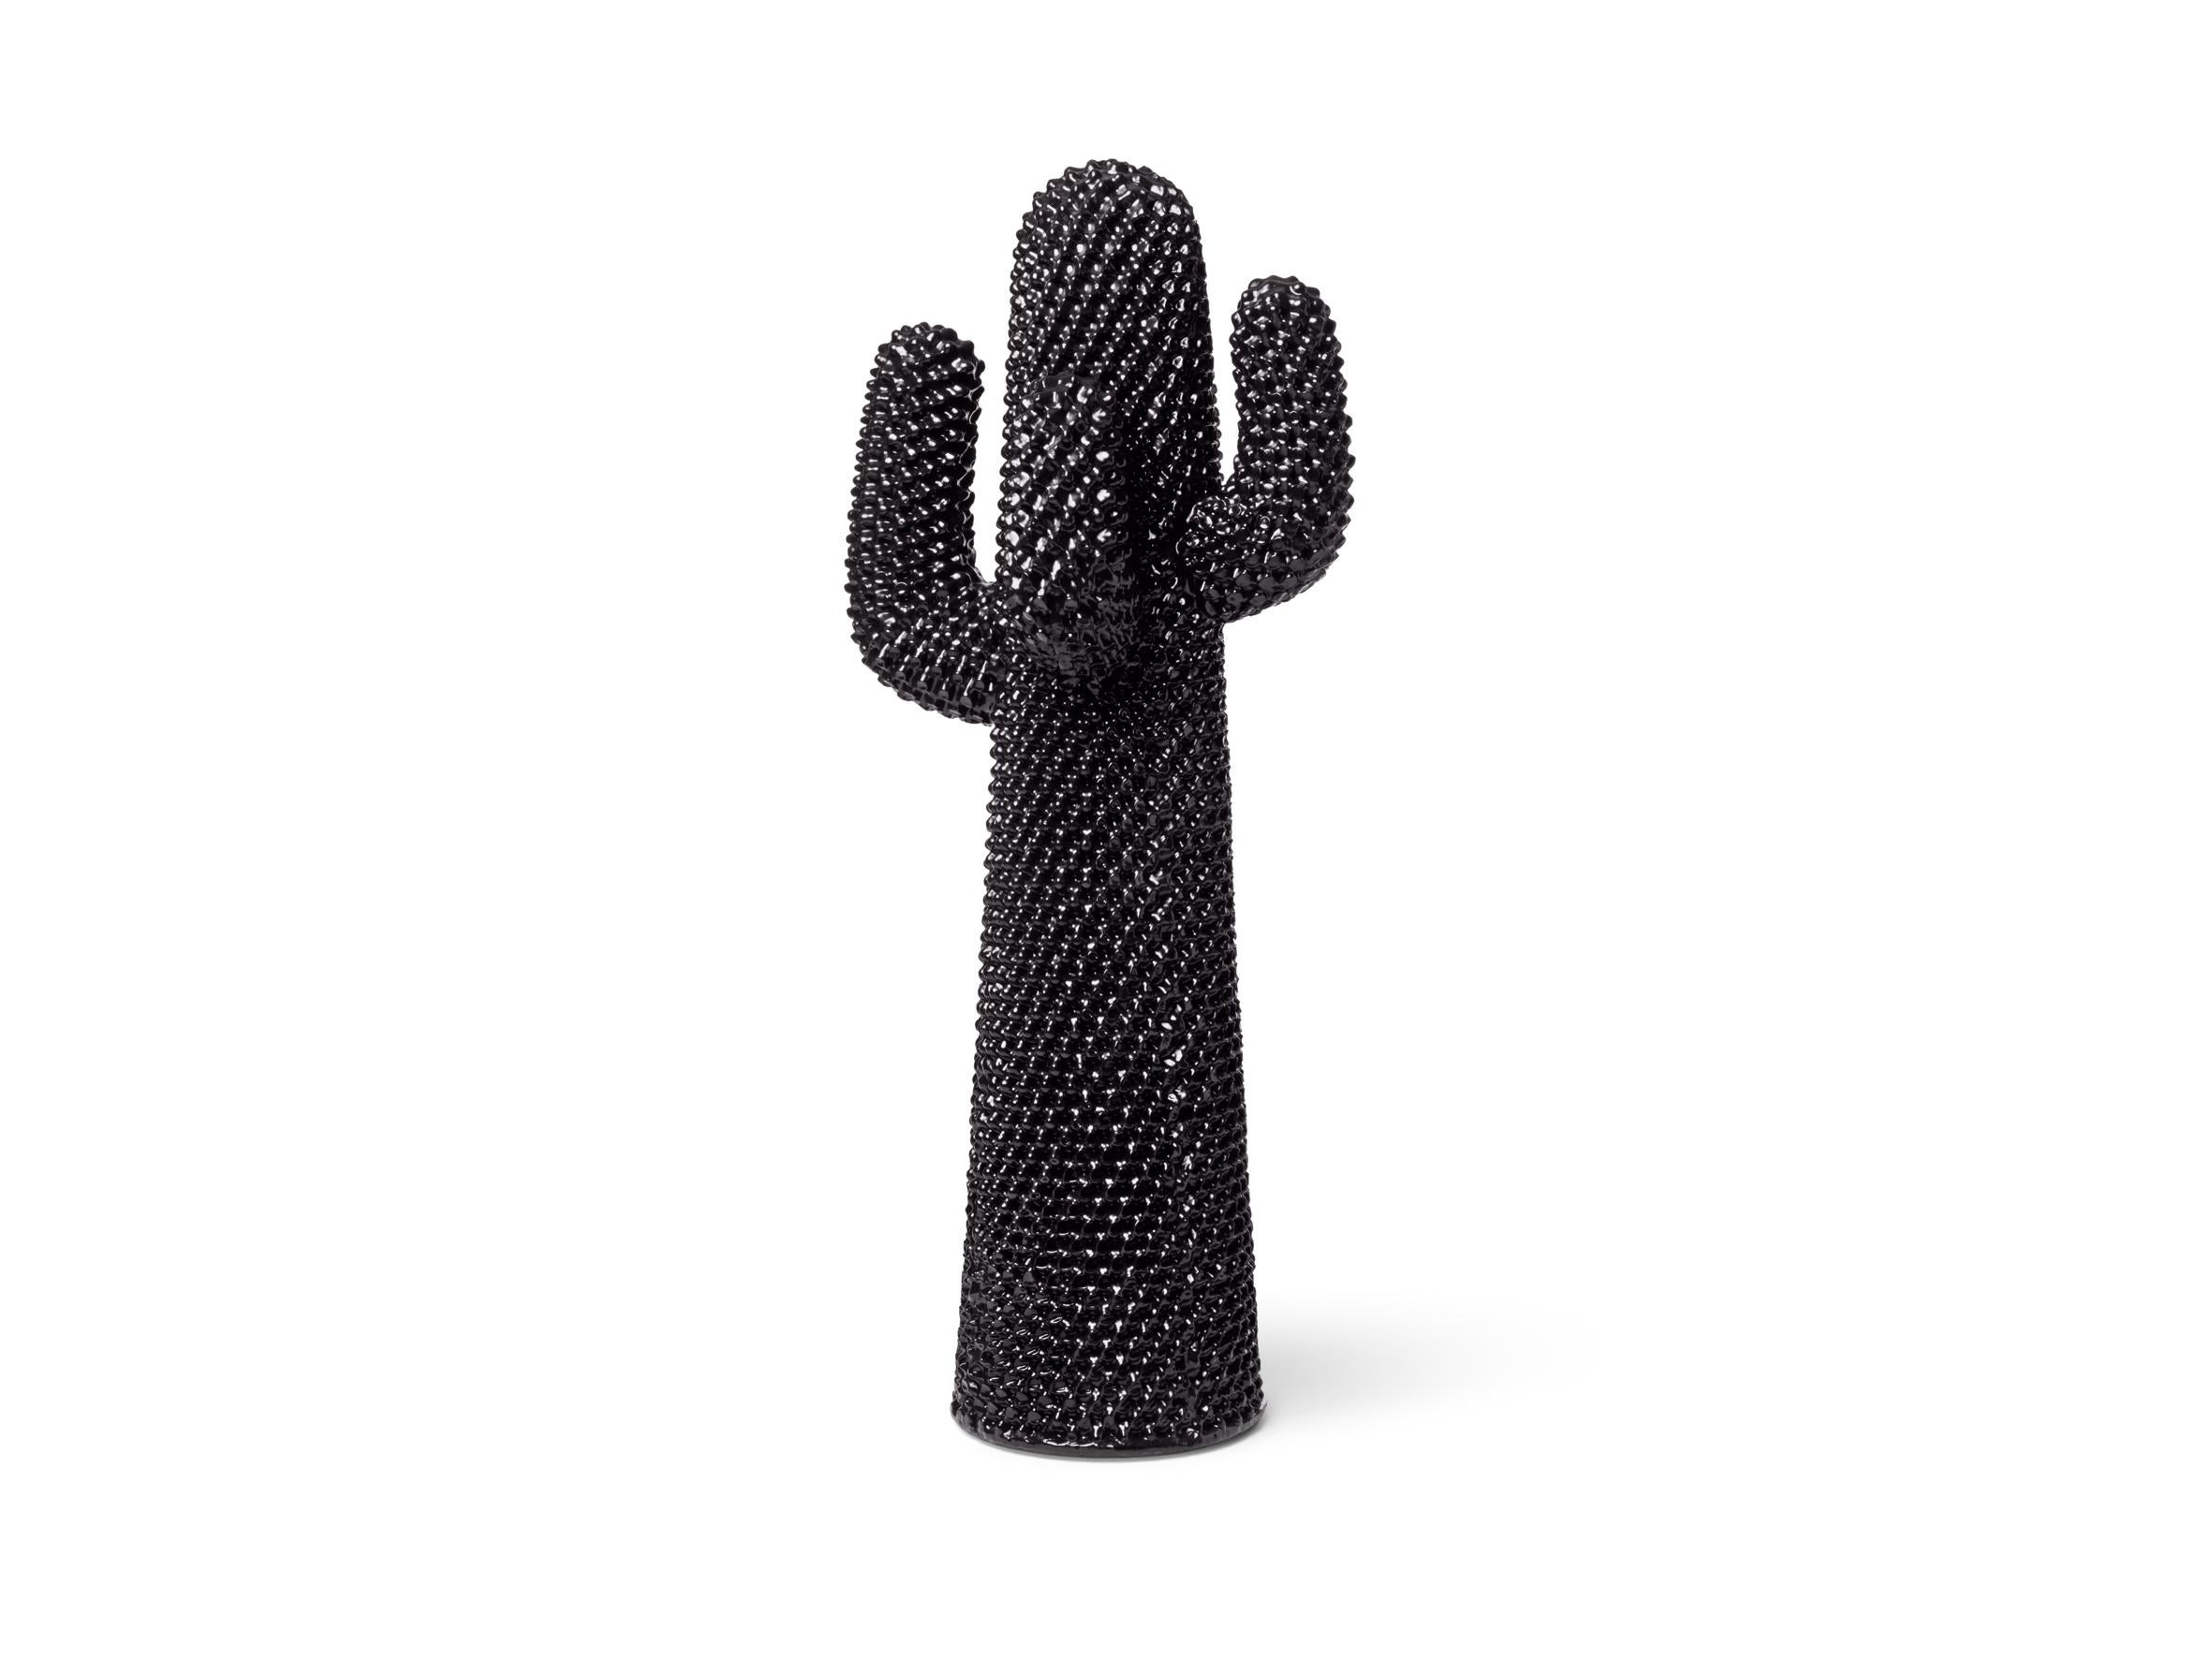 Cactus ist die Ikone des italienischen Designs, die die heimische Landschaft revolutioniert hat. Dieser aus flexiblem Polyurethan gefertigte Dielenbaum mit vier ausladenden Armen ist so hoch wie ein Mensch und sieht aus wie ein ironisches TOTEM. Es